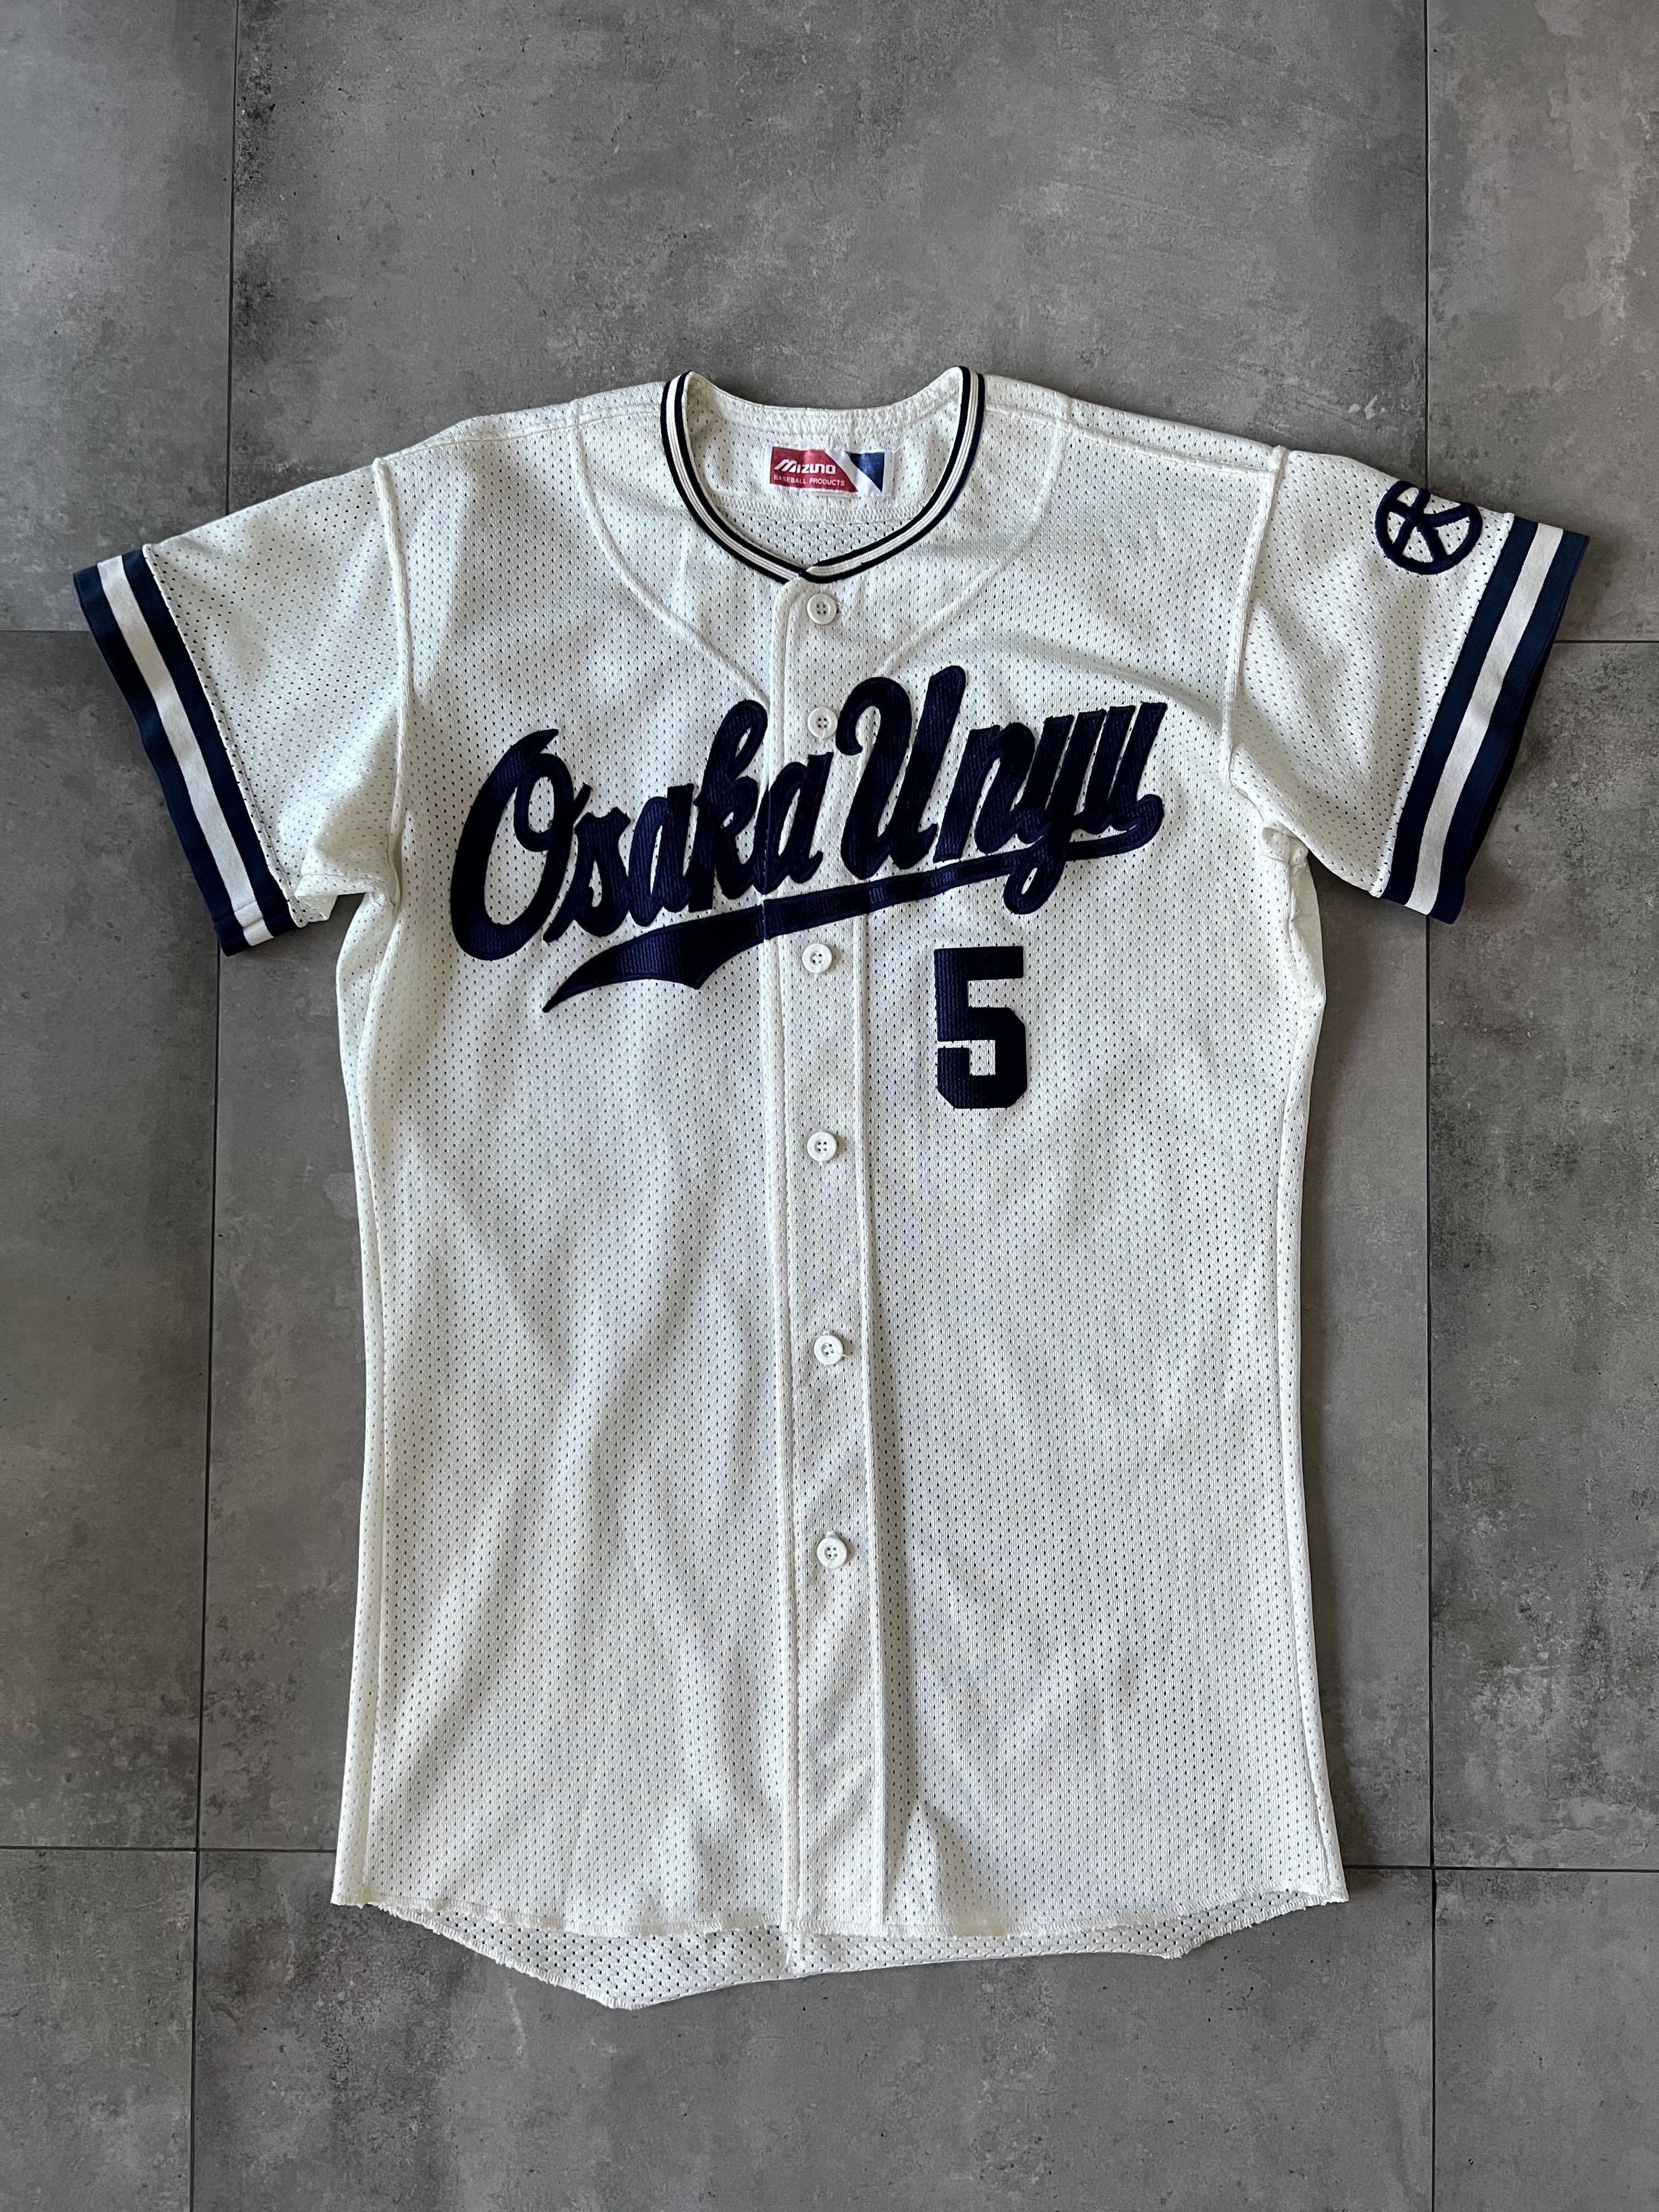 Osaka Japan baseball jersey